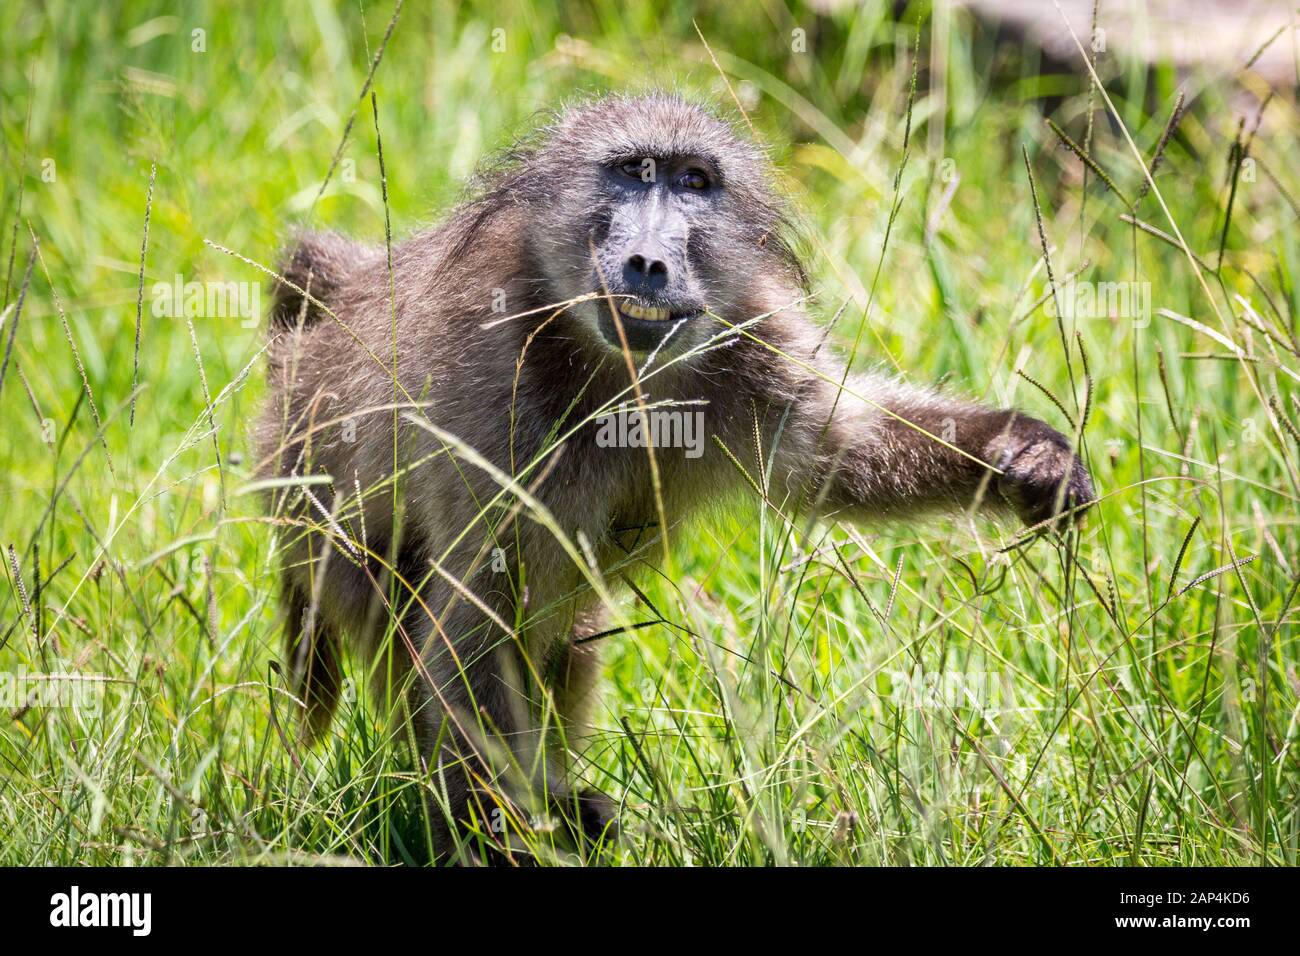 Close up d'un babouin d'empoigner un brin d'herbe avec sa main et manger la partie supérieure de celui-ci, Afrique du Sud Banque D'Images